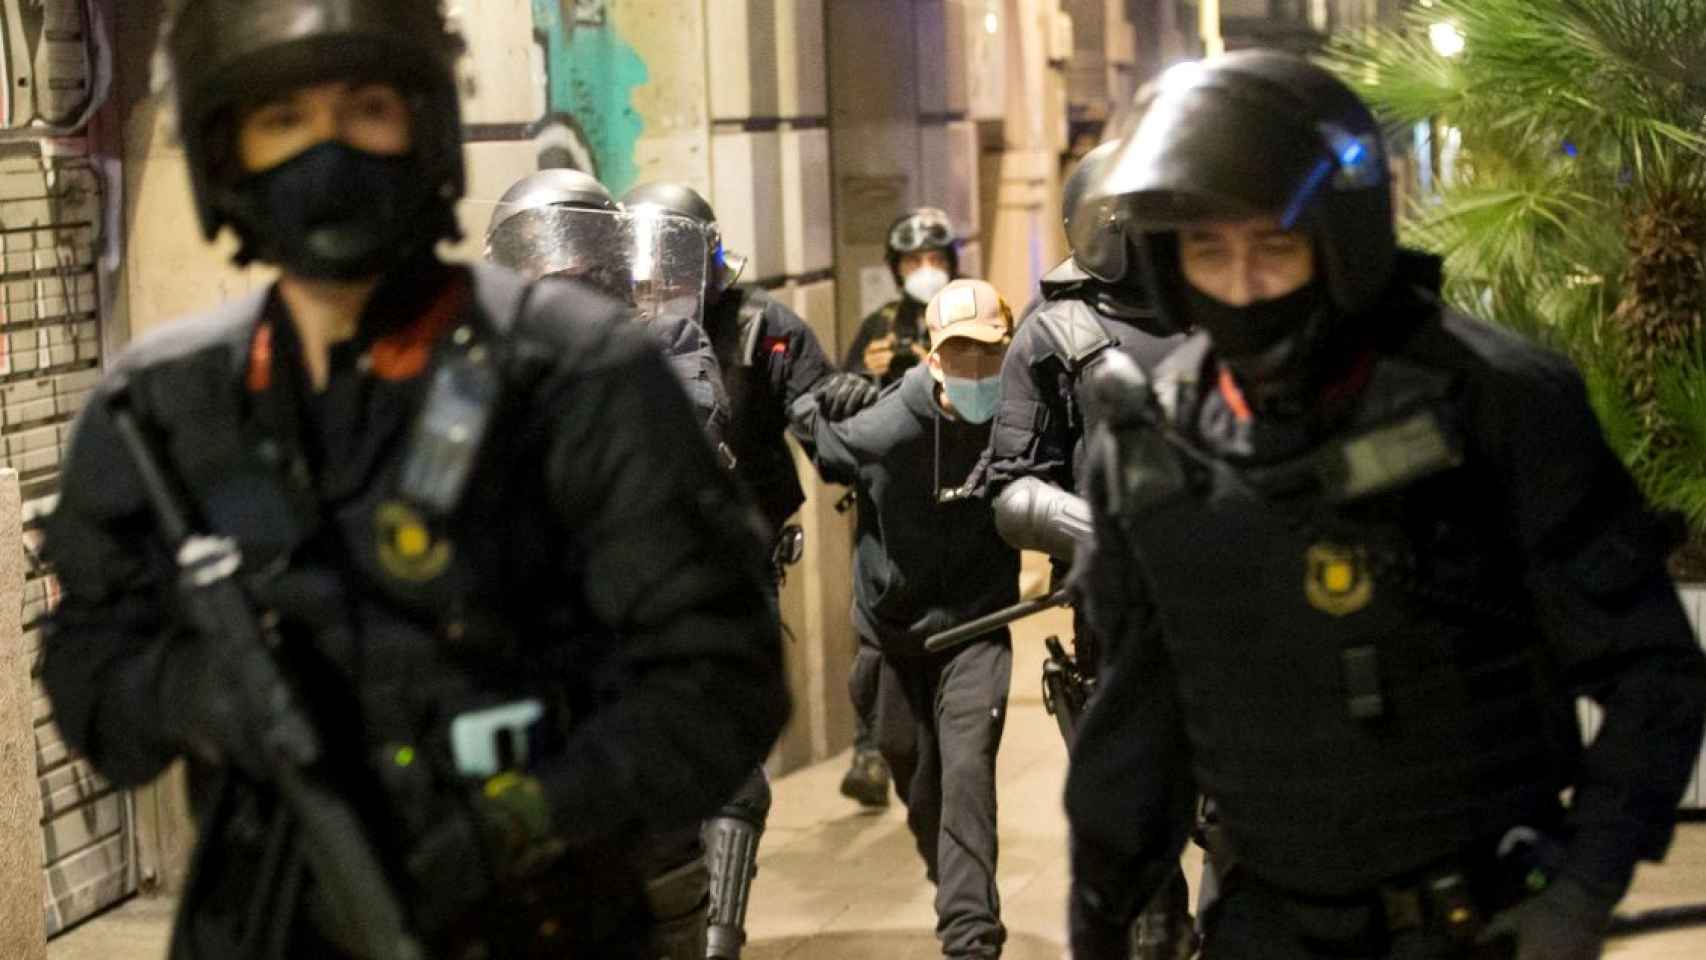 Los Mossos d'Esquadra realizando una detención durante algaradas en el casco antiguo de Barcelona / EFE